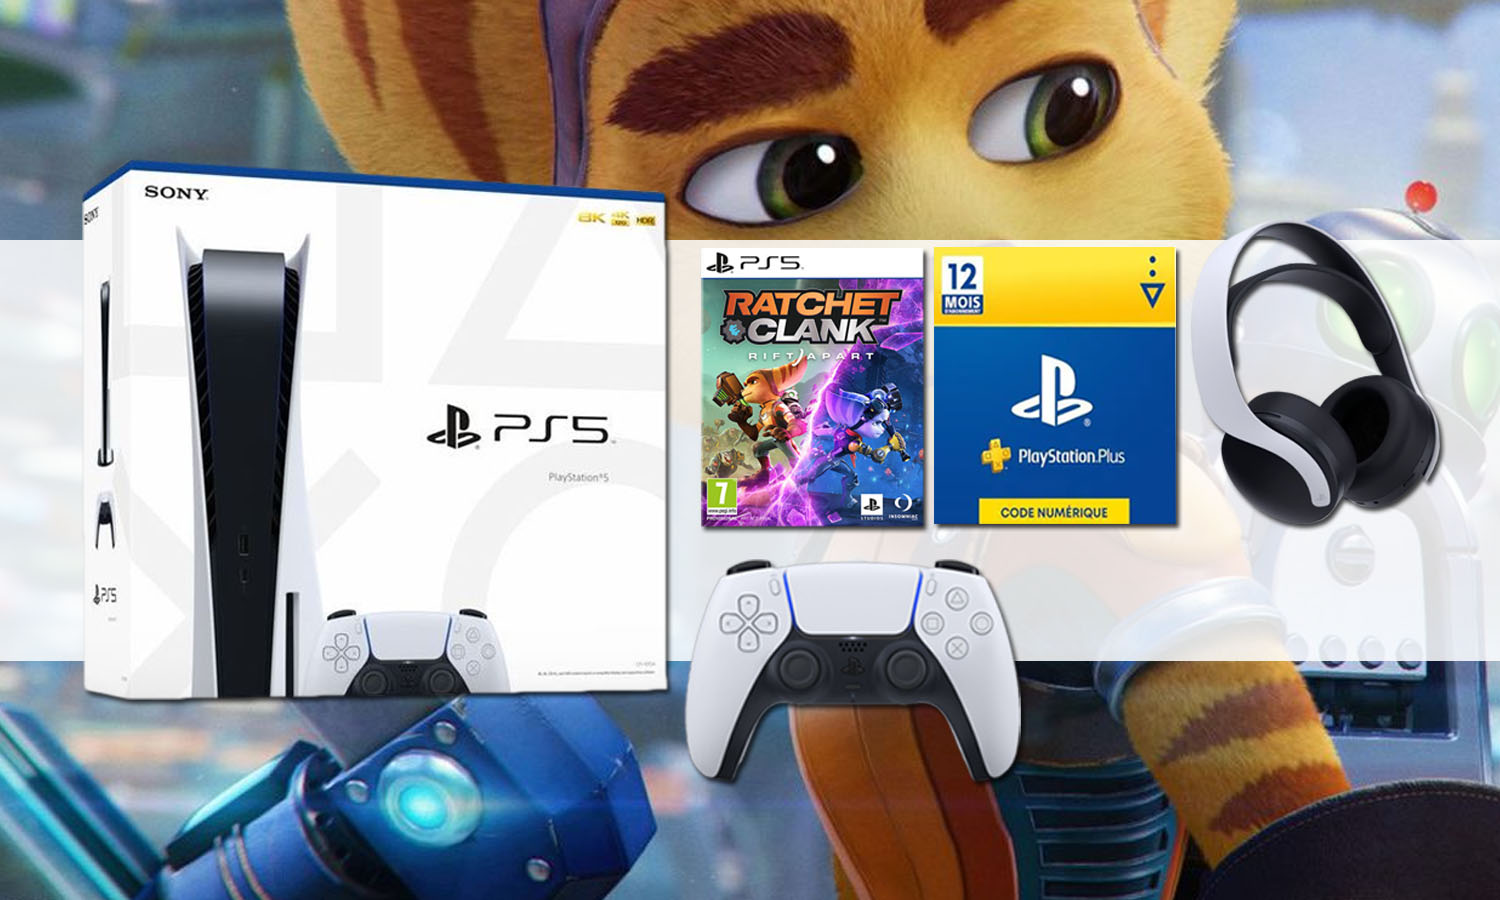 PS4 : Consoles, Jeux, Packs et Accessoires PS4 - Sony